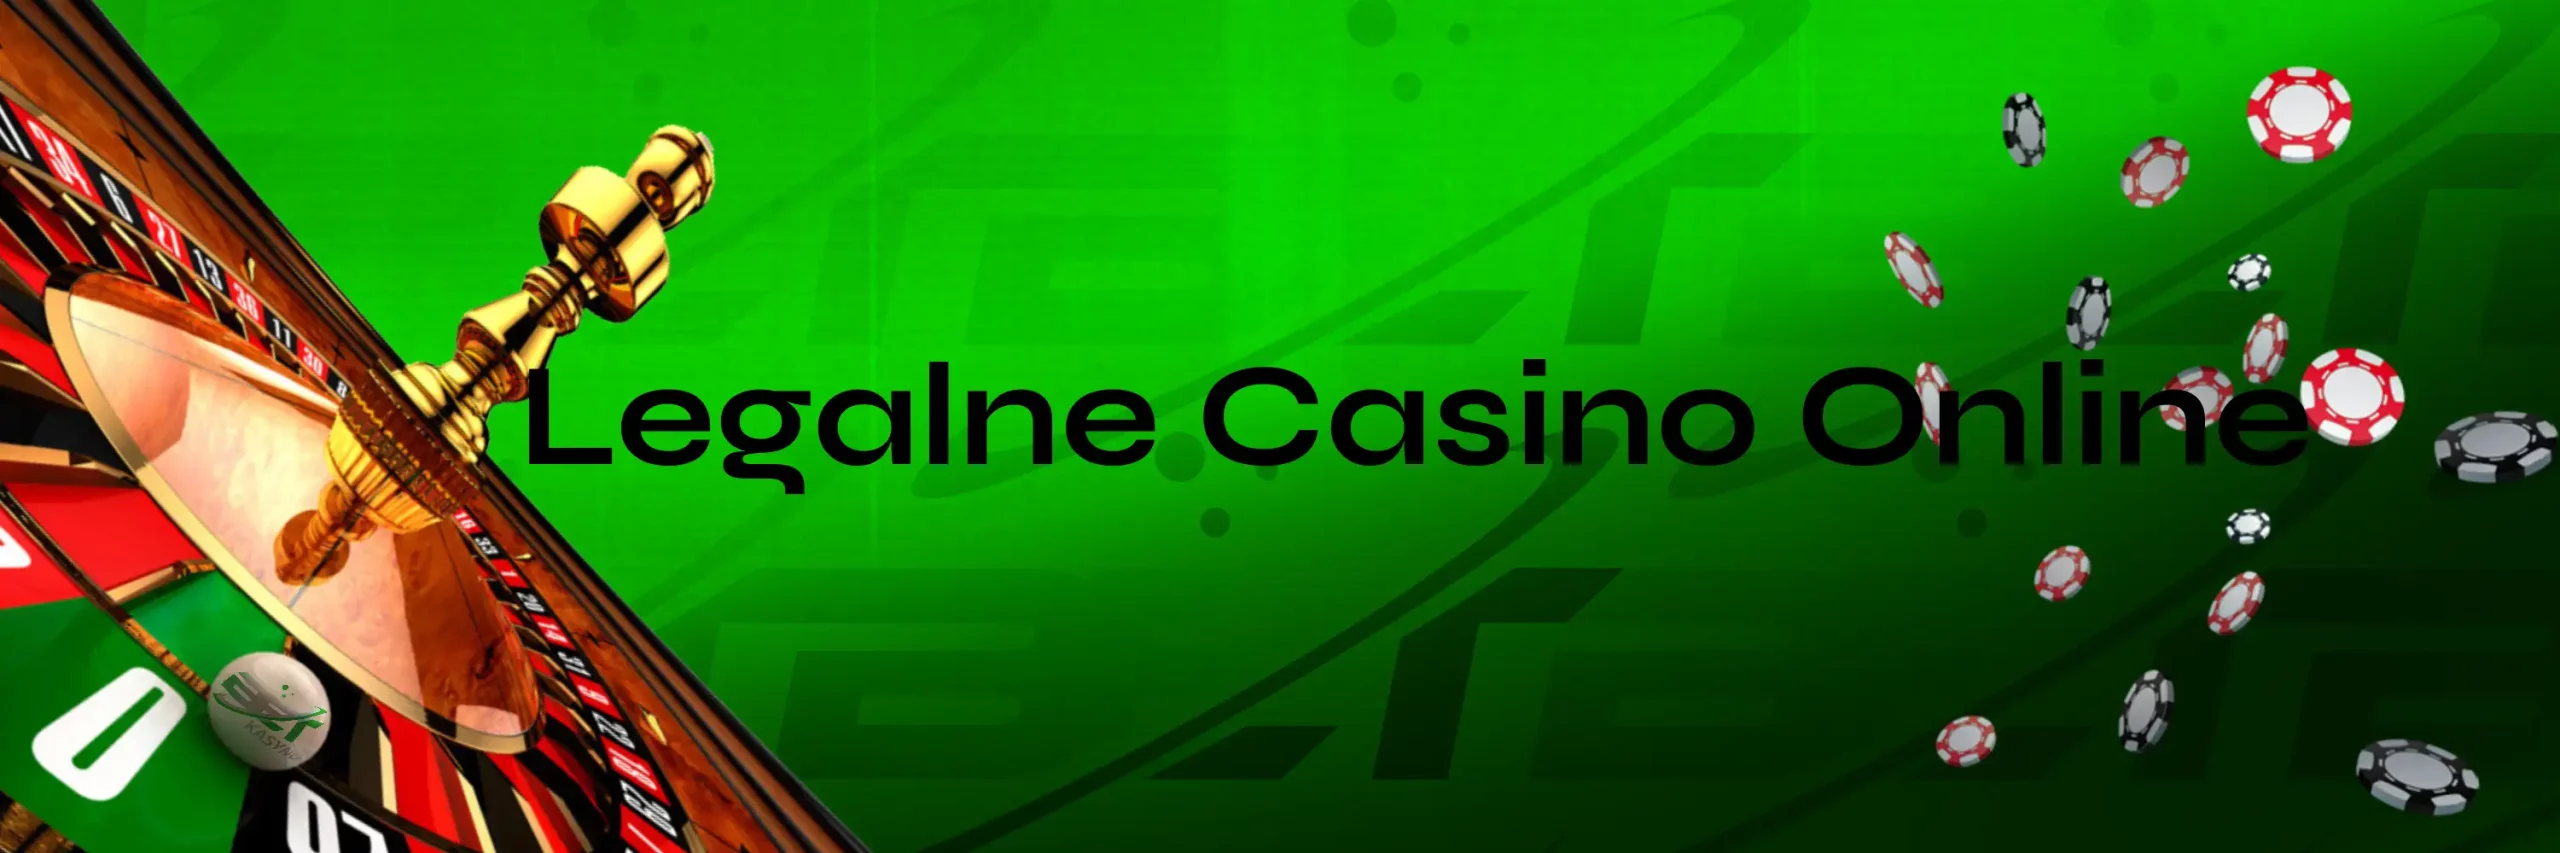 Casino w Polsce Legalne